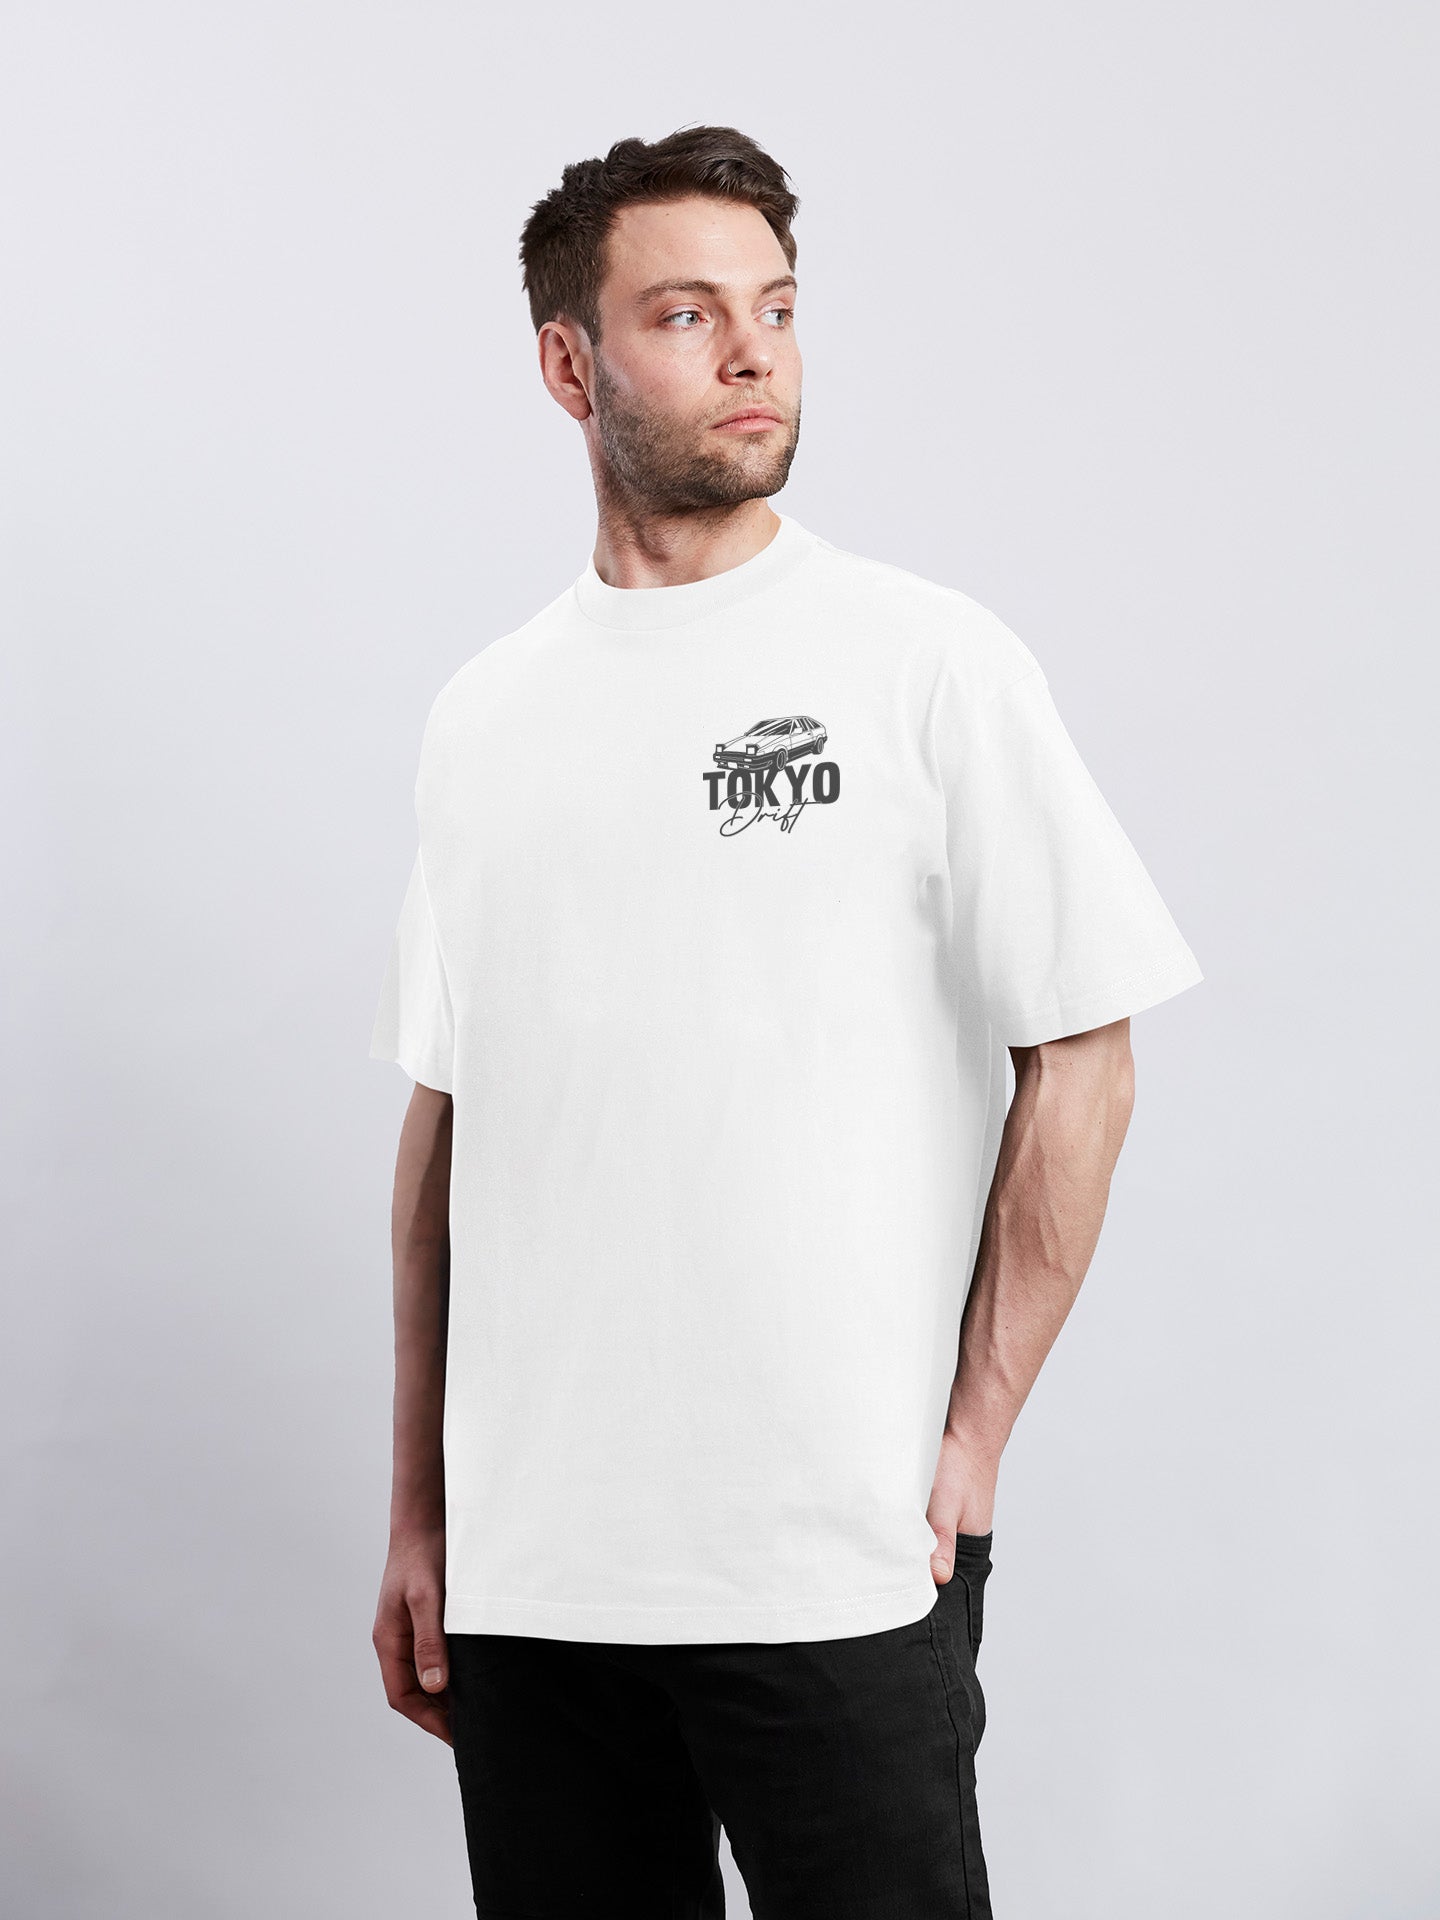 Tokyo Drift T-Shirt